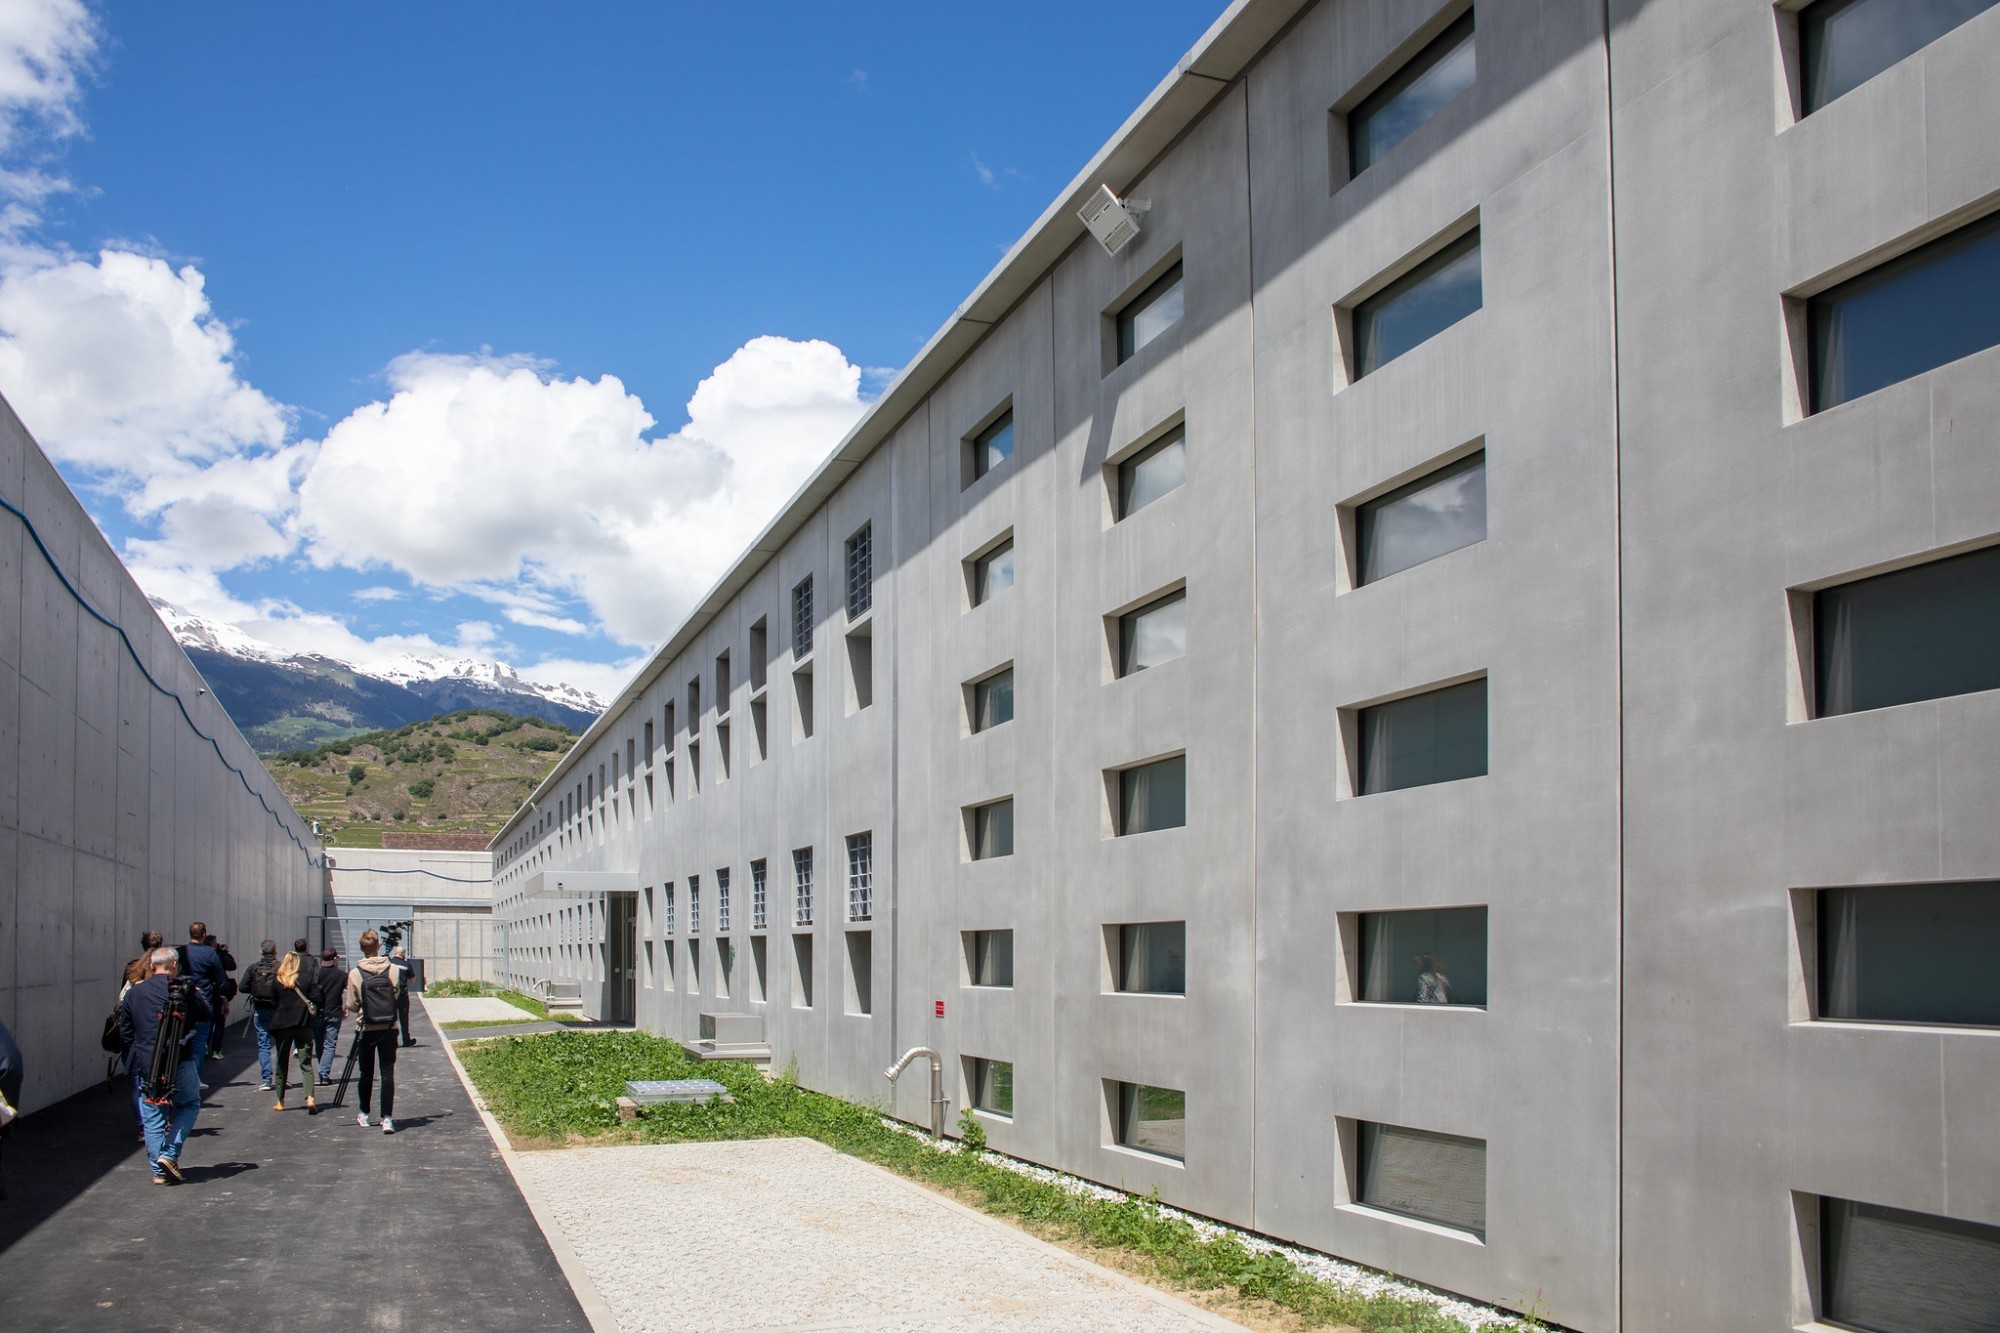 La prison de Sion a été rénovée et agrandie, dans le but d'améliorer les conditions de vie des détenus et d'optimiser l'organisation de ses services.